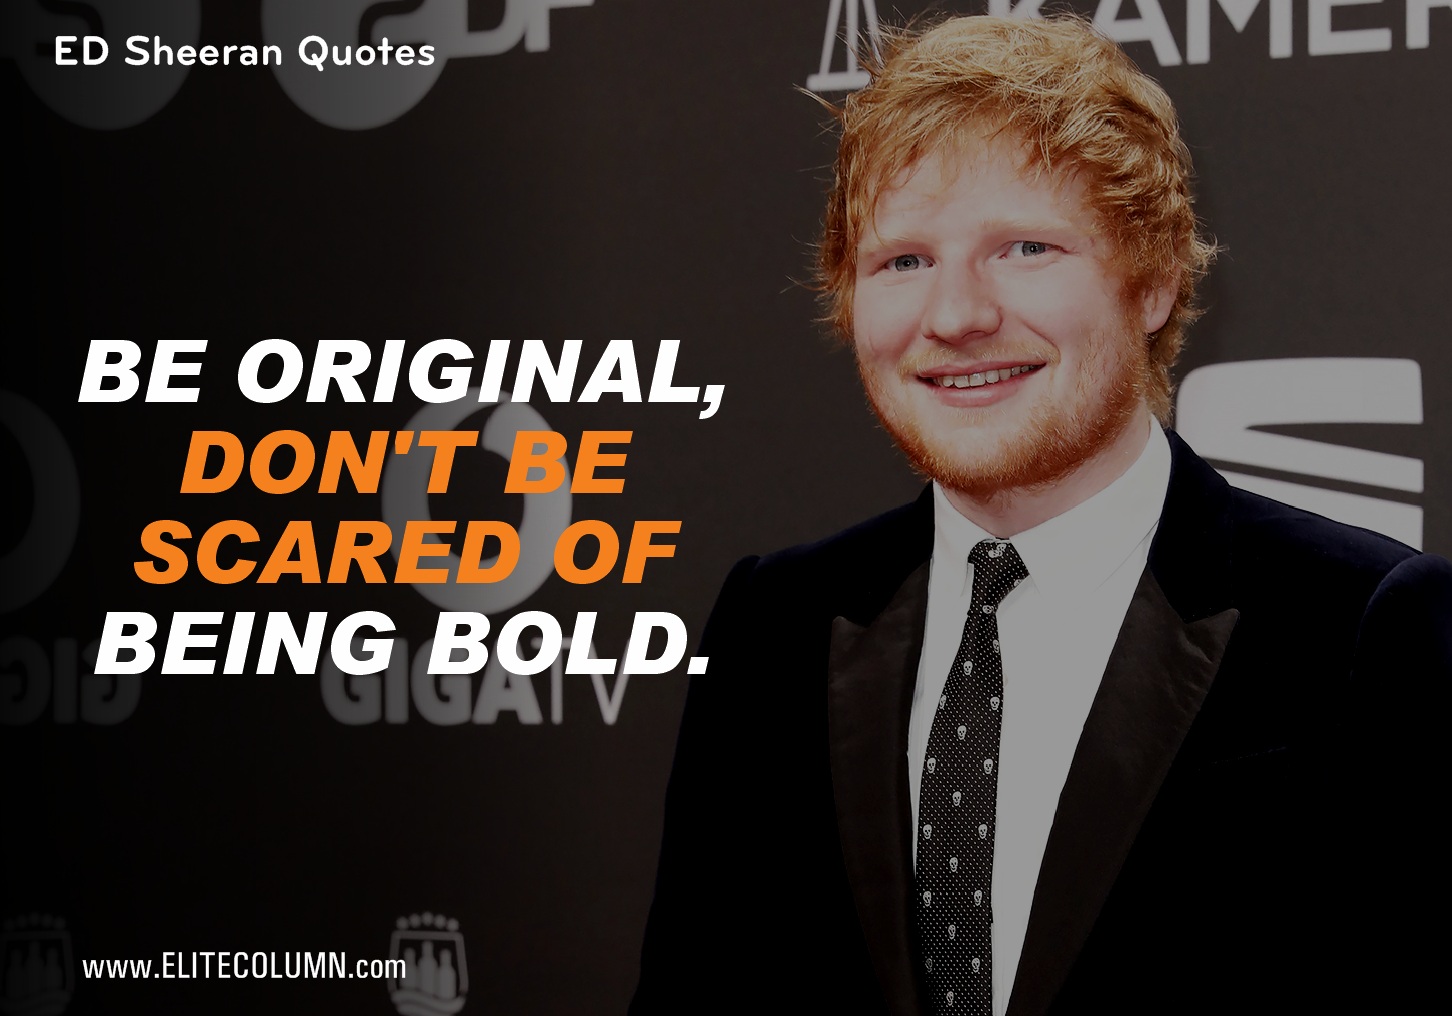 Ed Sheeran Quotes (9)